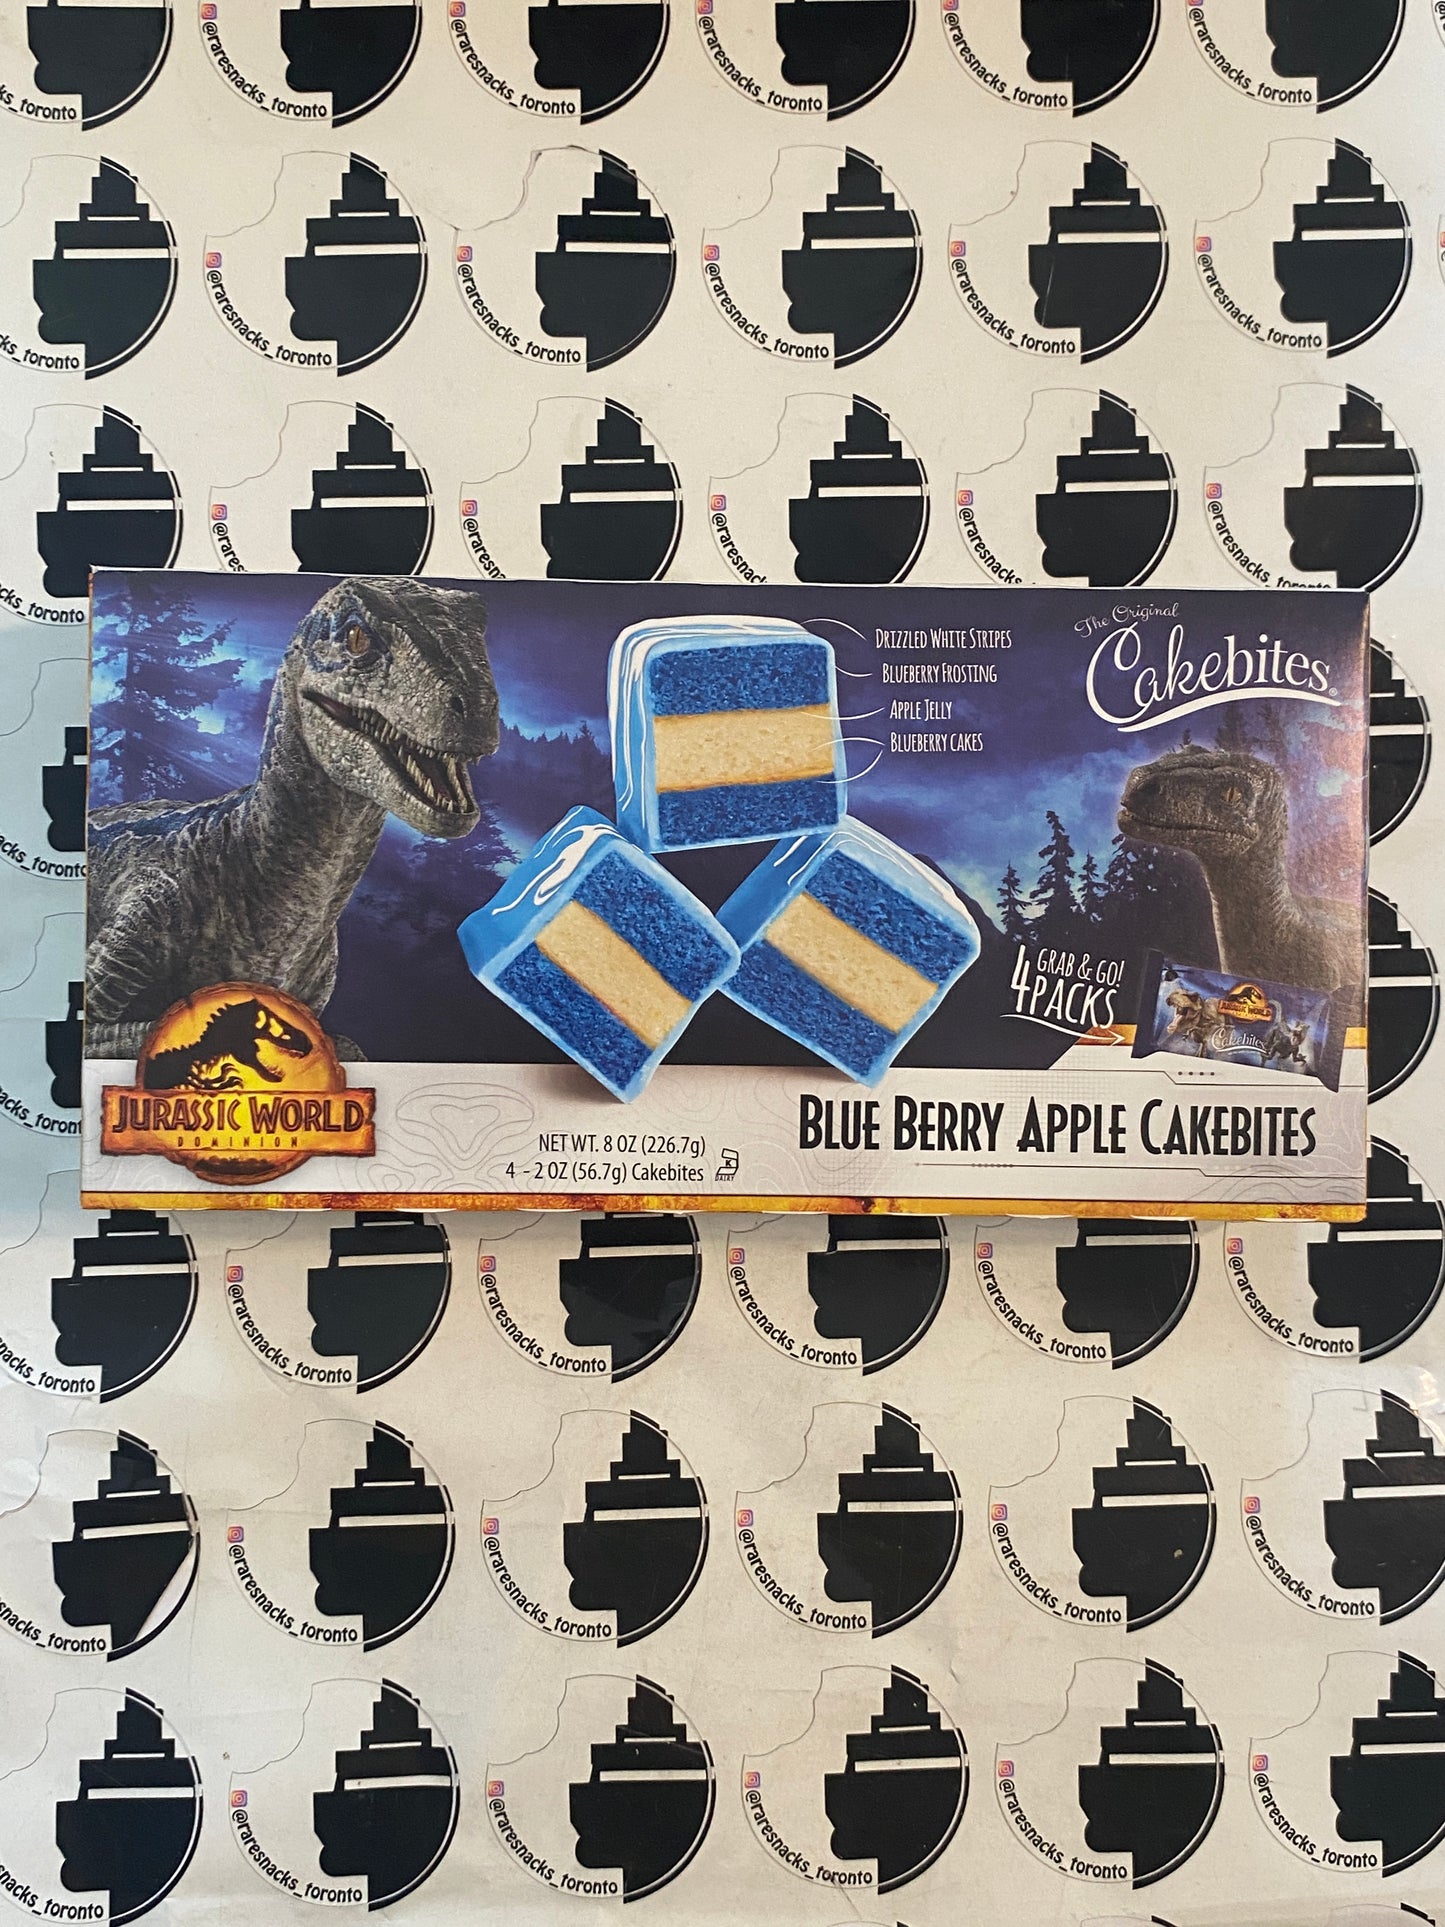 Jurassic Park Cakebites Blueberry Apple Cakebites